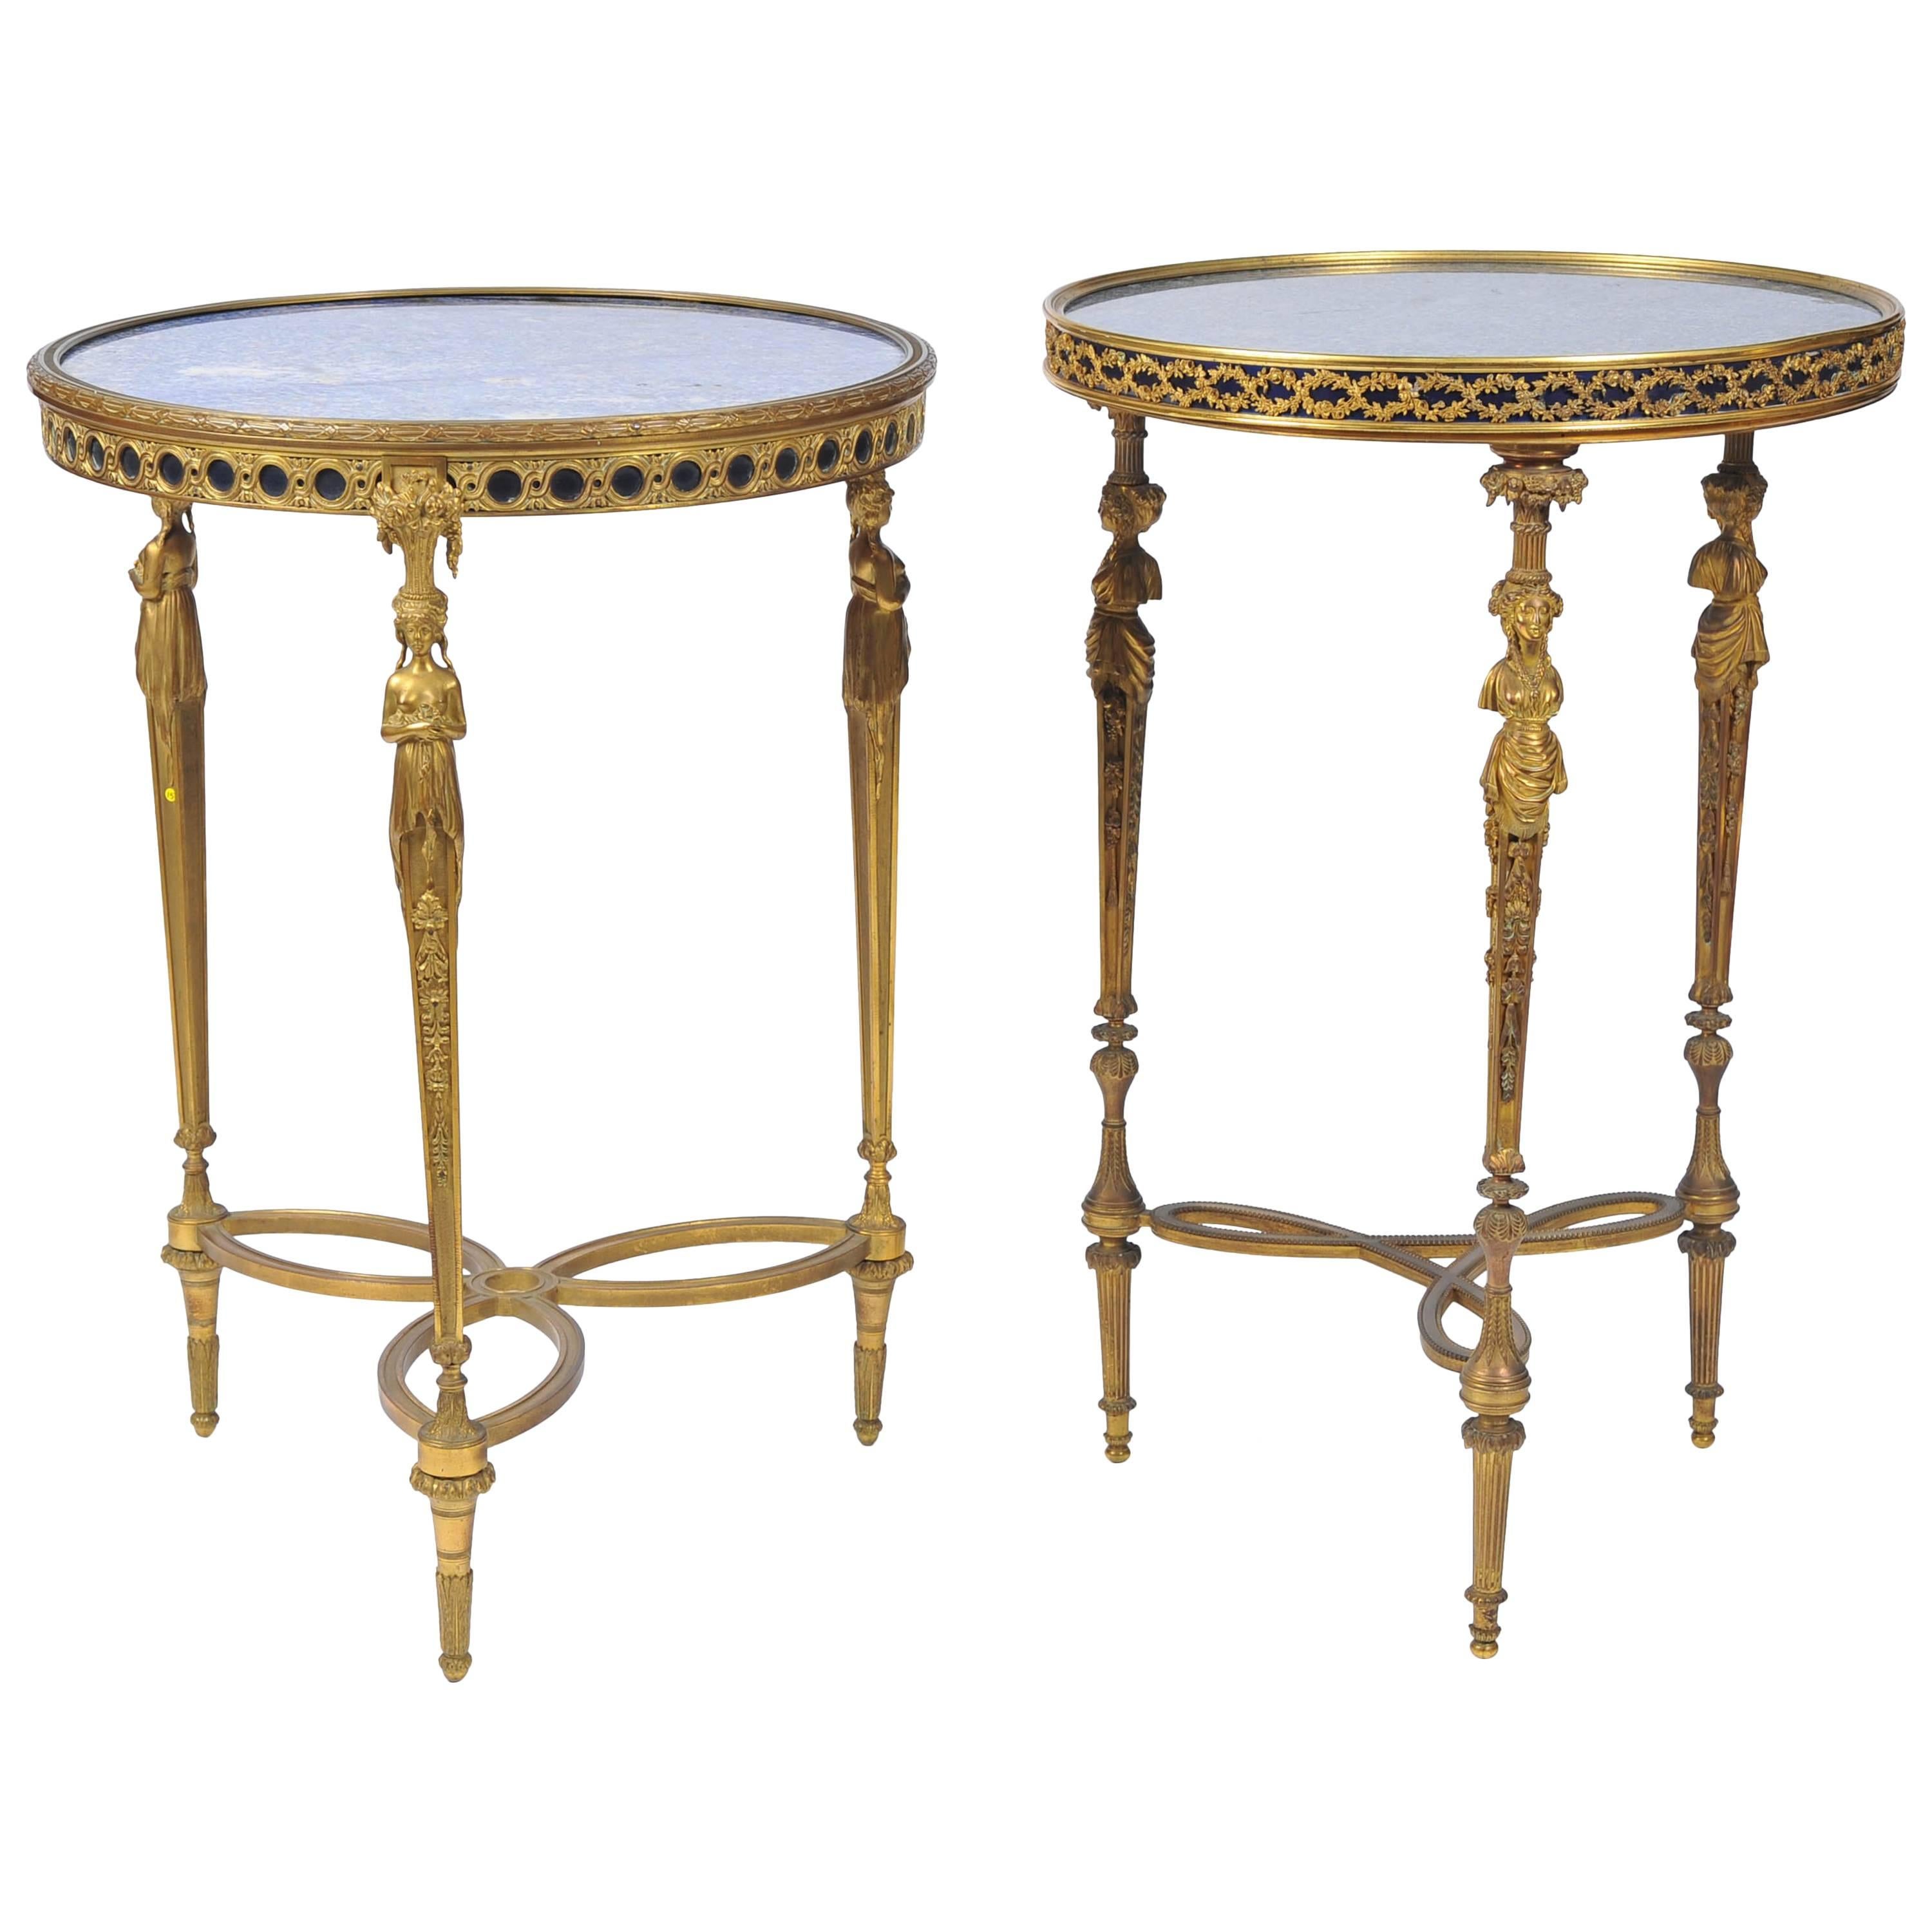 Fast identisches Paar Tische im Louis-XVI-Stil des 19. Jahrhunderts, nach Art von Weisweiller.